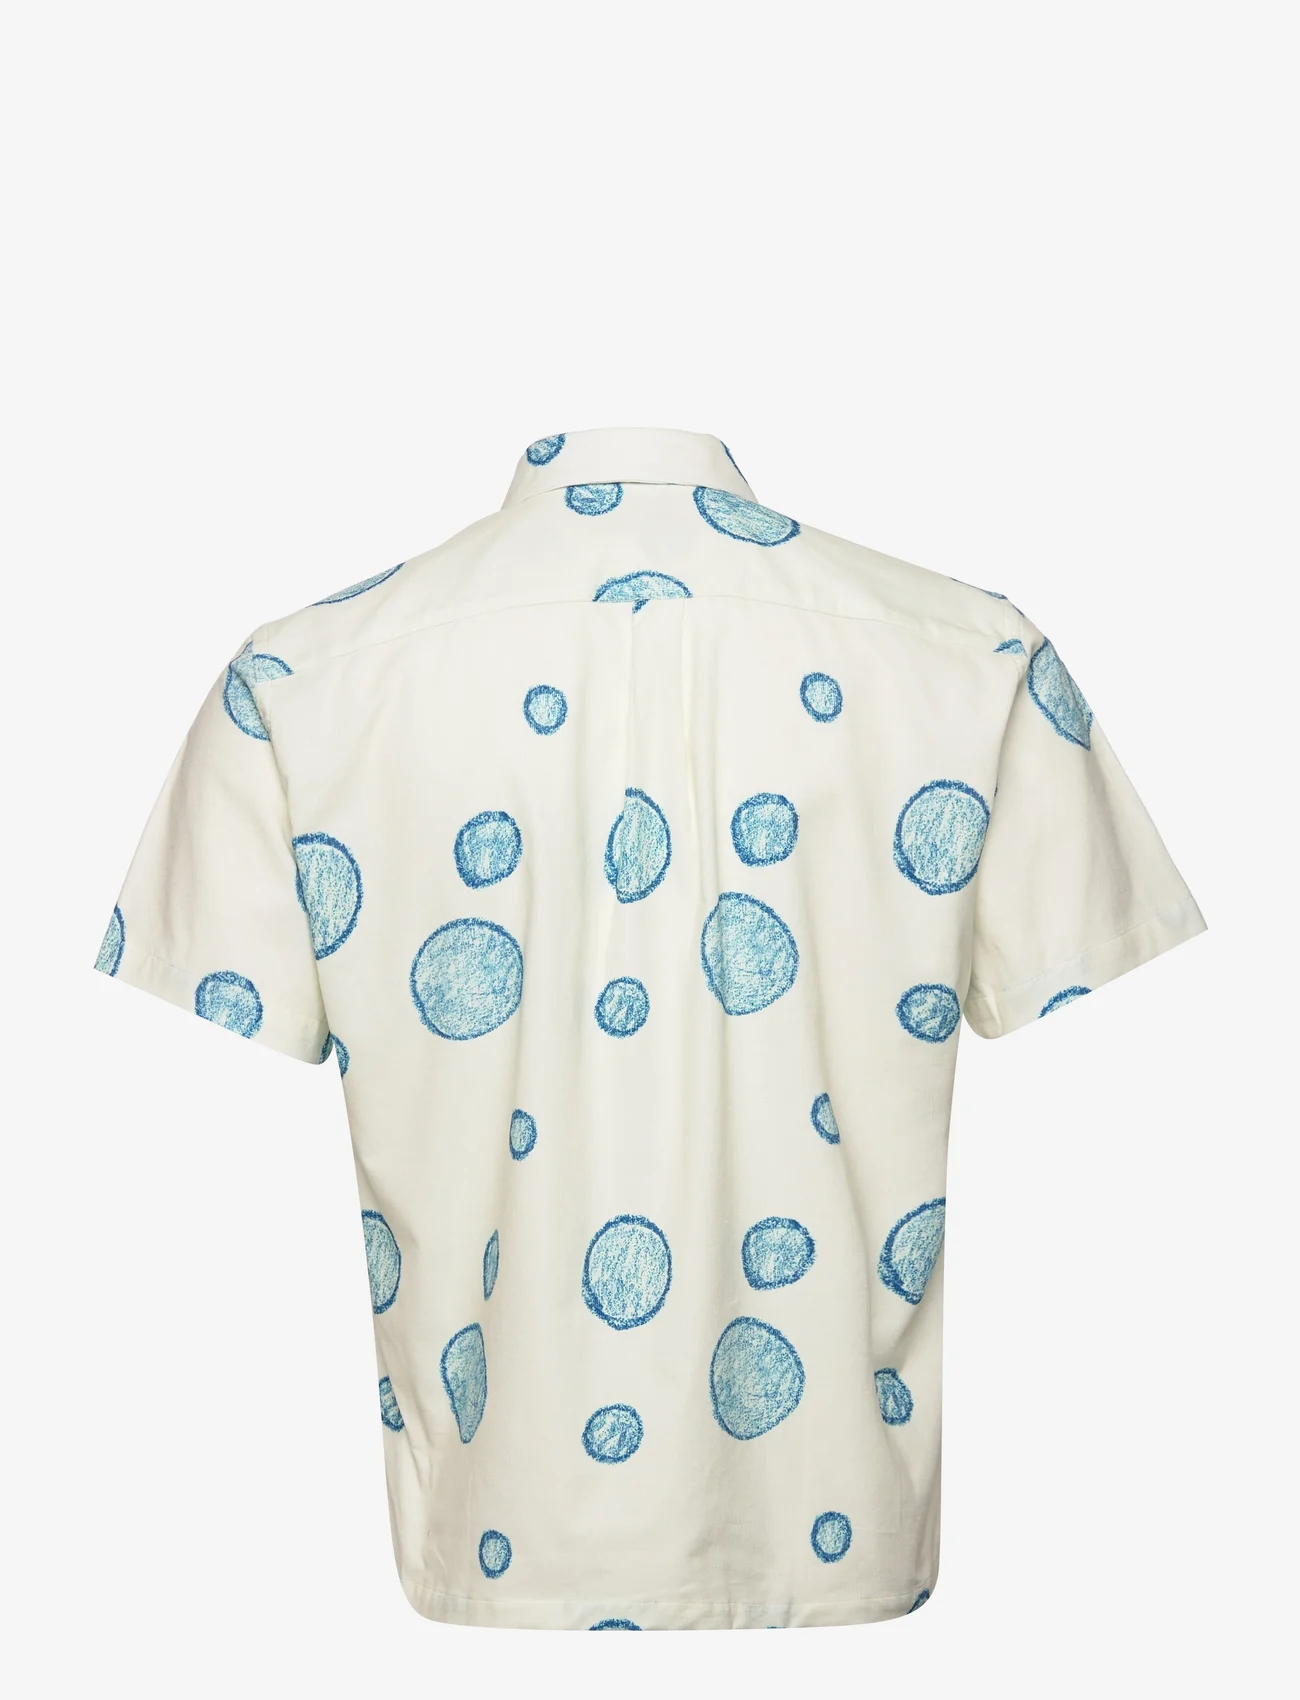 Forét - POOL SHIRT - kortærmede skjorter - boule print - 1